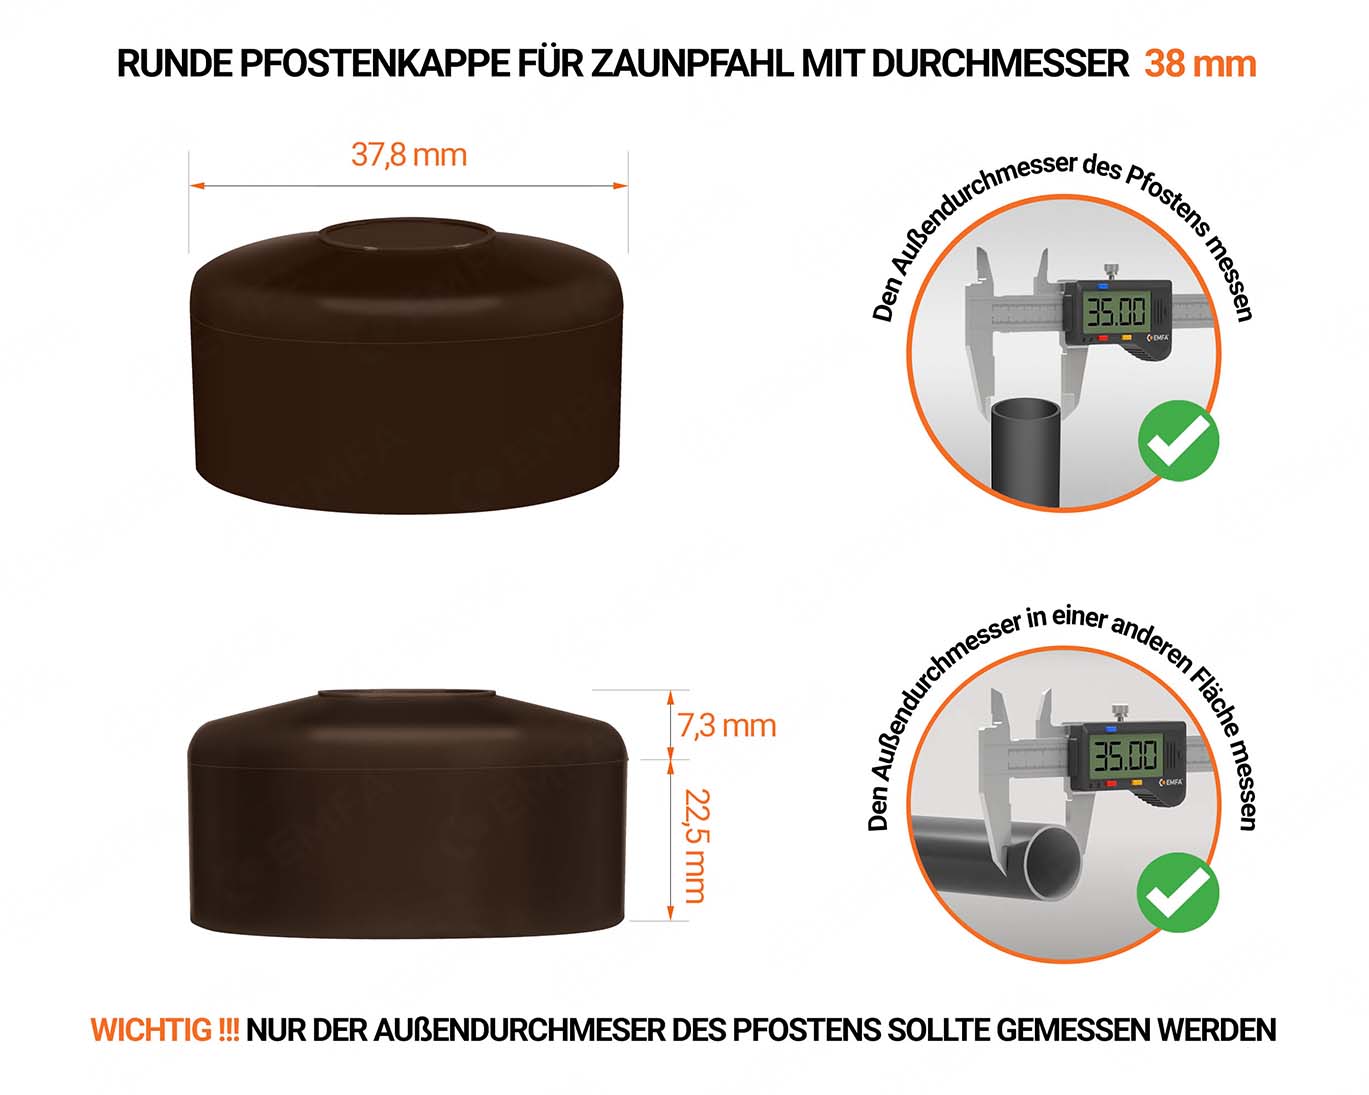 Braune Pfostenkappen rund für Pfostendurchmesser  38 mm mit technischen Abmessungen und Anleitung für korrekte Messung